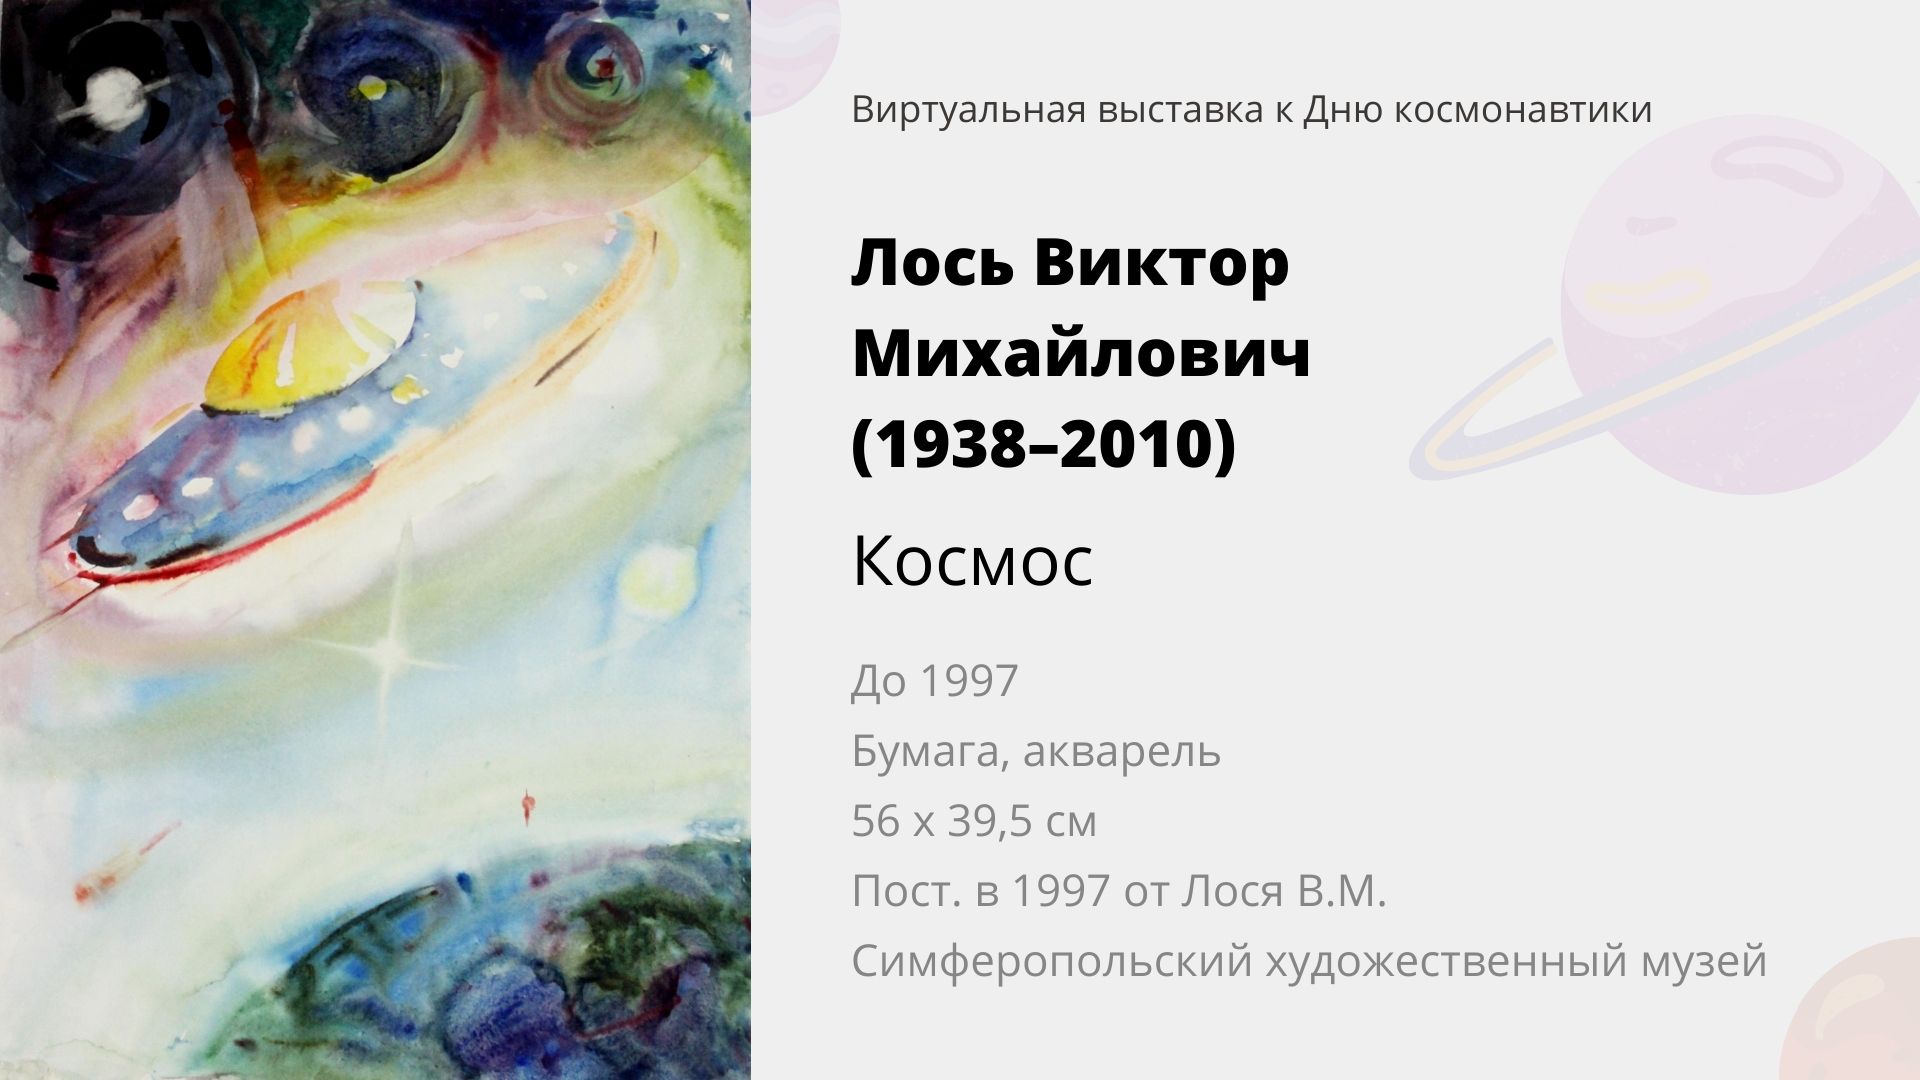 Виртуальная выставка к Дню космонавтики